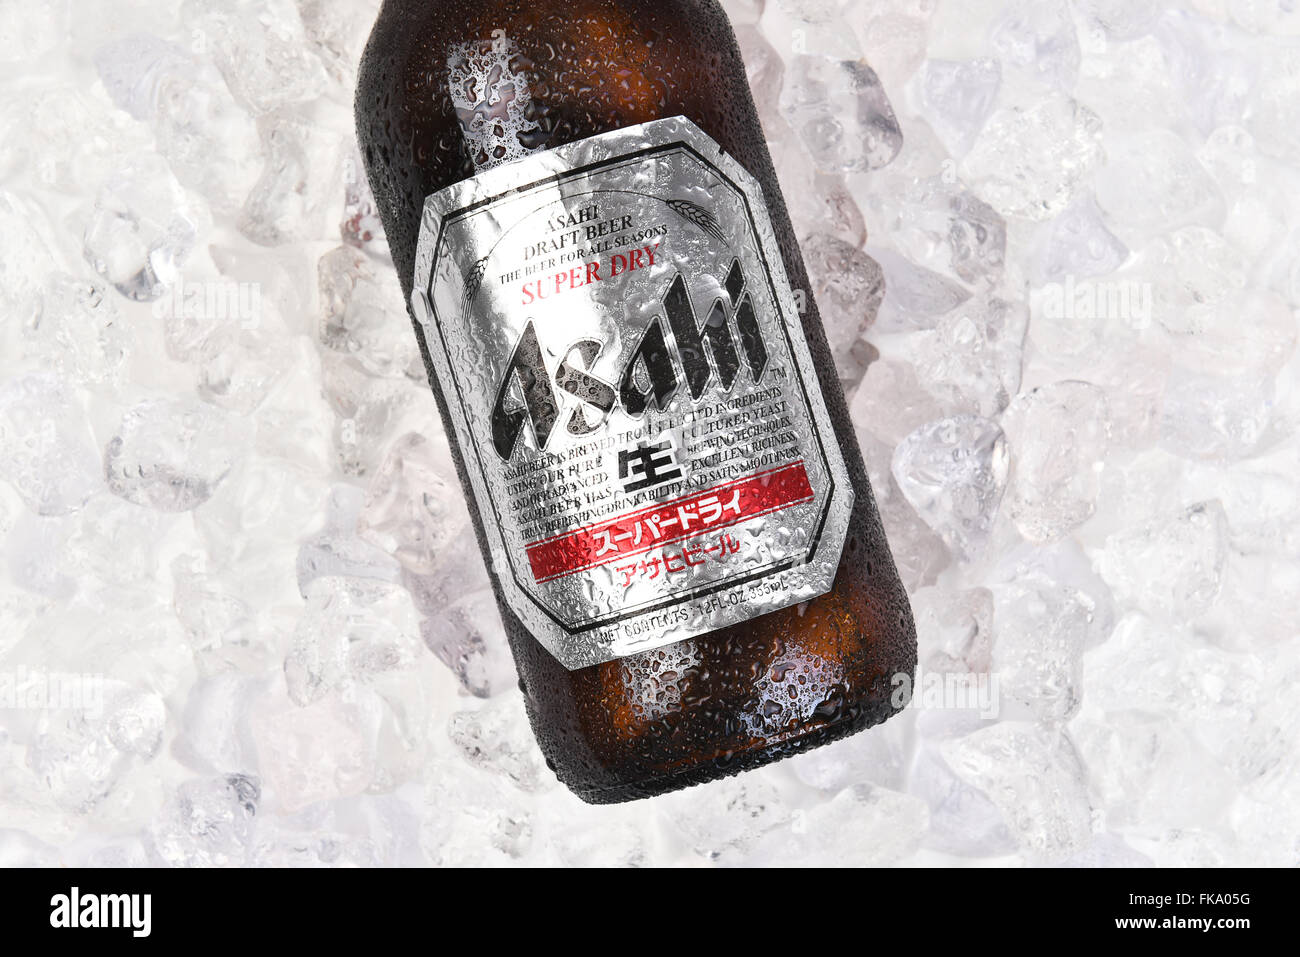 Asahi Beer Flasche auf einem Bett aus Eis. Nahaufnahme des Labels im Querformat. Stockfoto